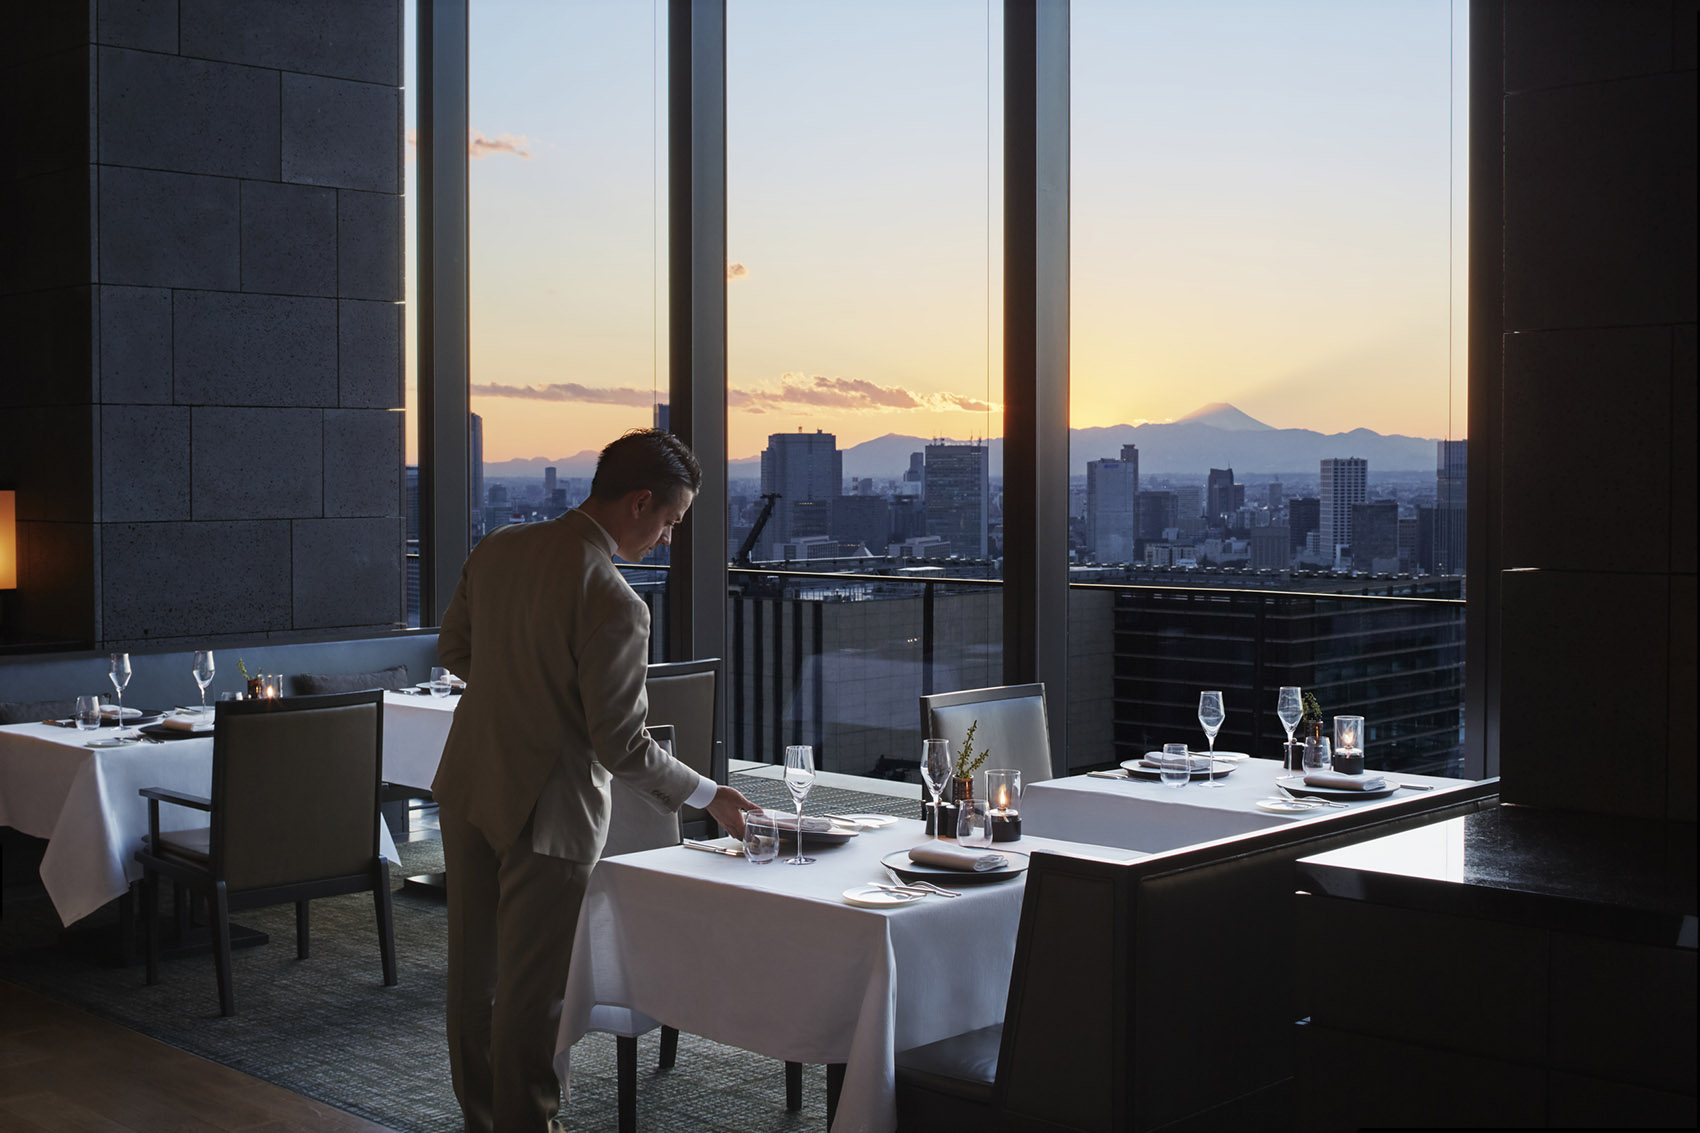 日本东京·“安缦AMAN”精品度假酒店 / Kerry Hill